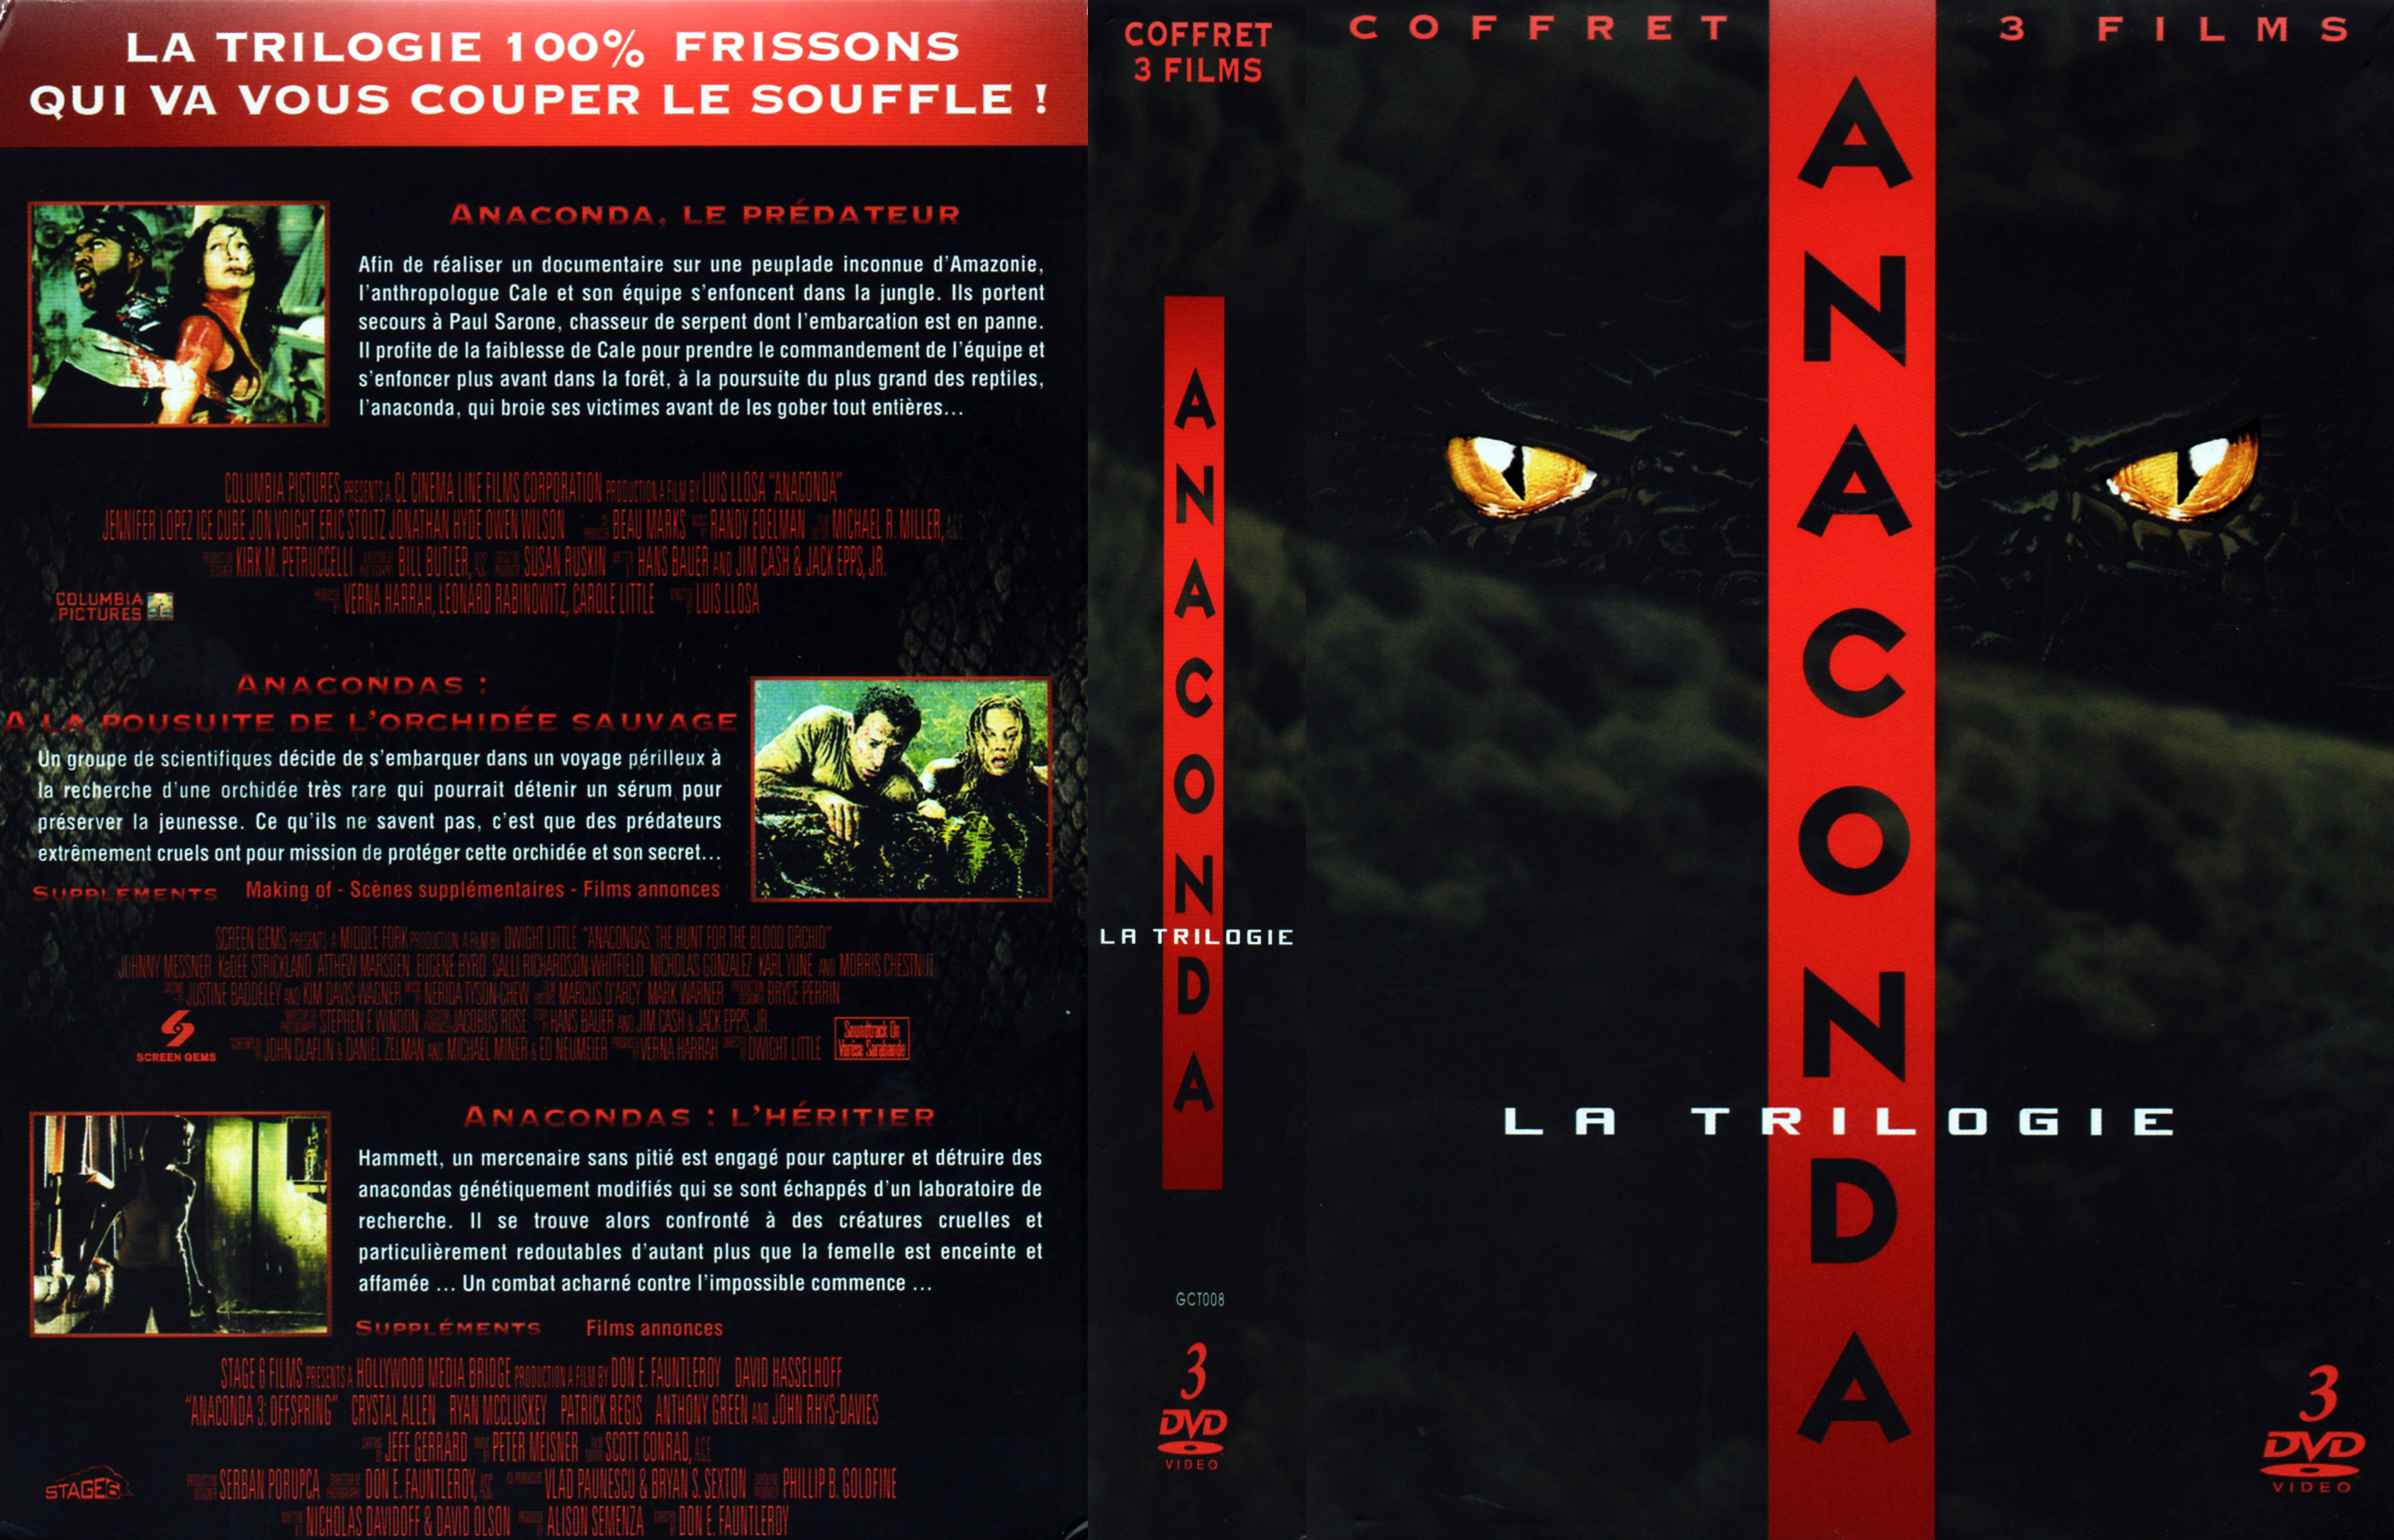 Jaquette DVD Anaconda Trilogie COFFRET